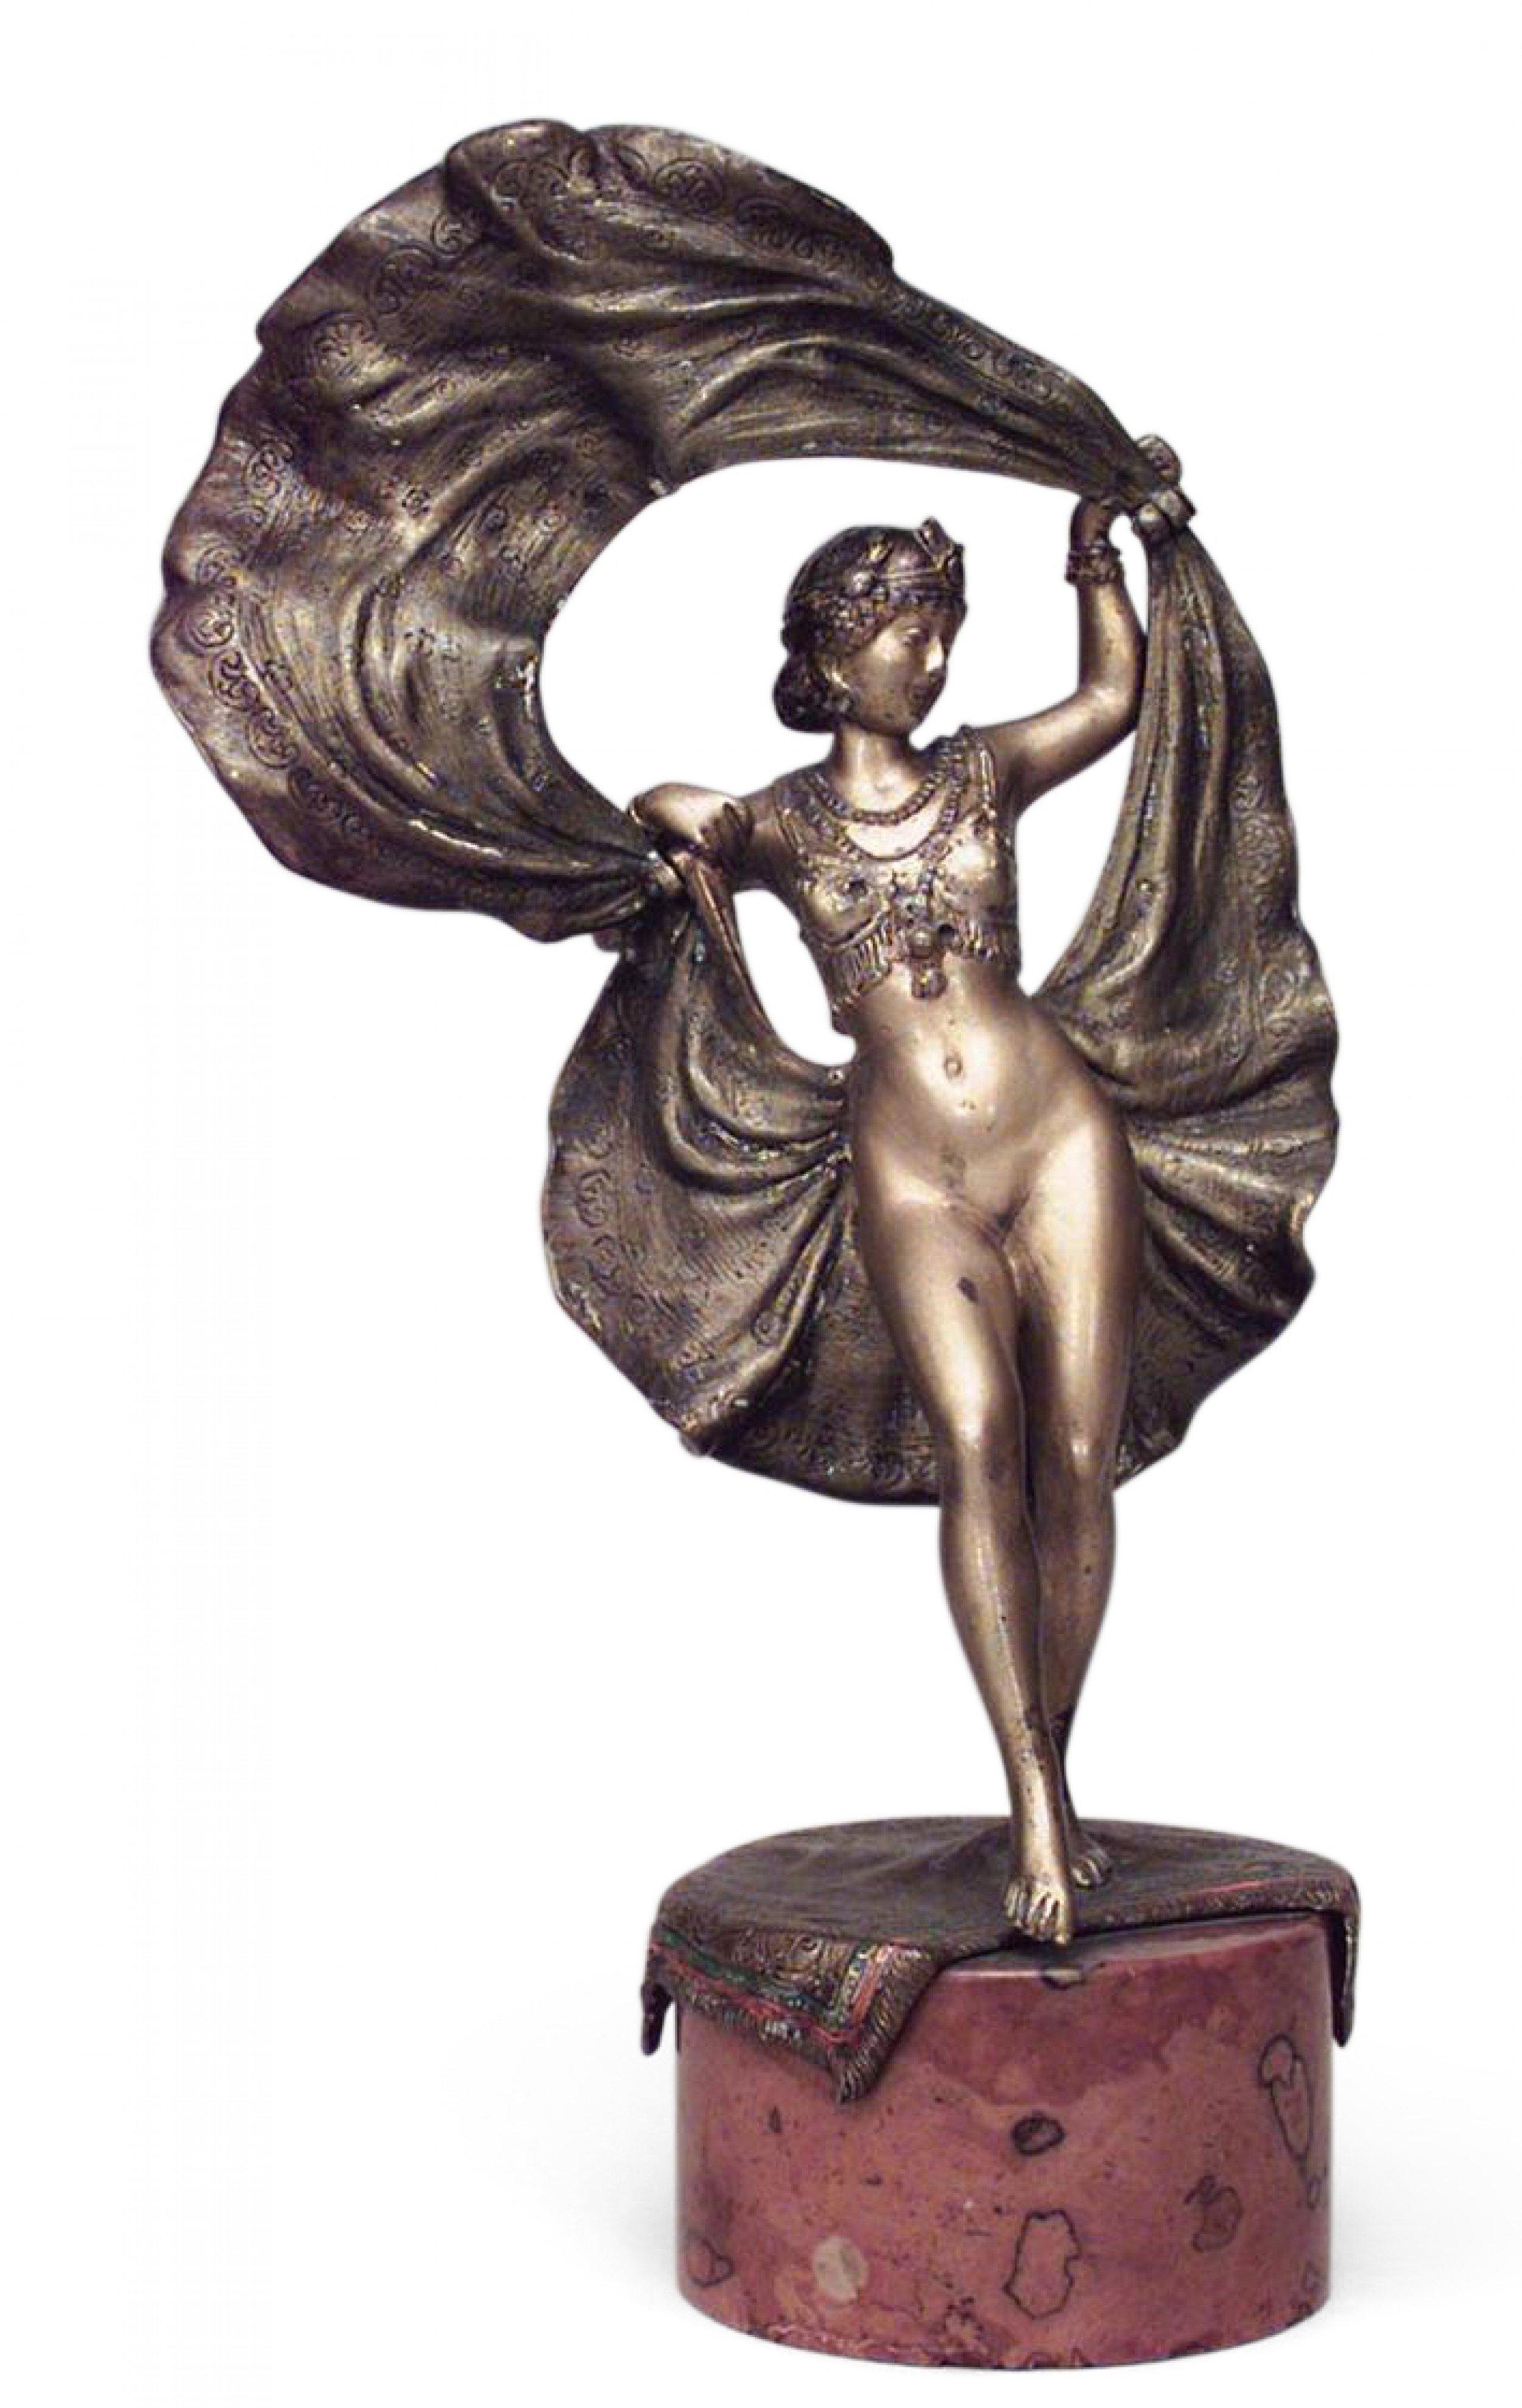 Bronze autrichien Art Déco représentant une danseuse érotique avec une jupe relevée mobile sur une base ronde en marbre (signé BERGMAN).
 